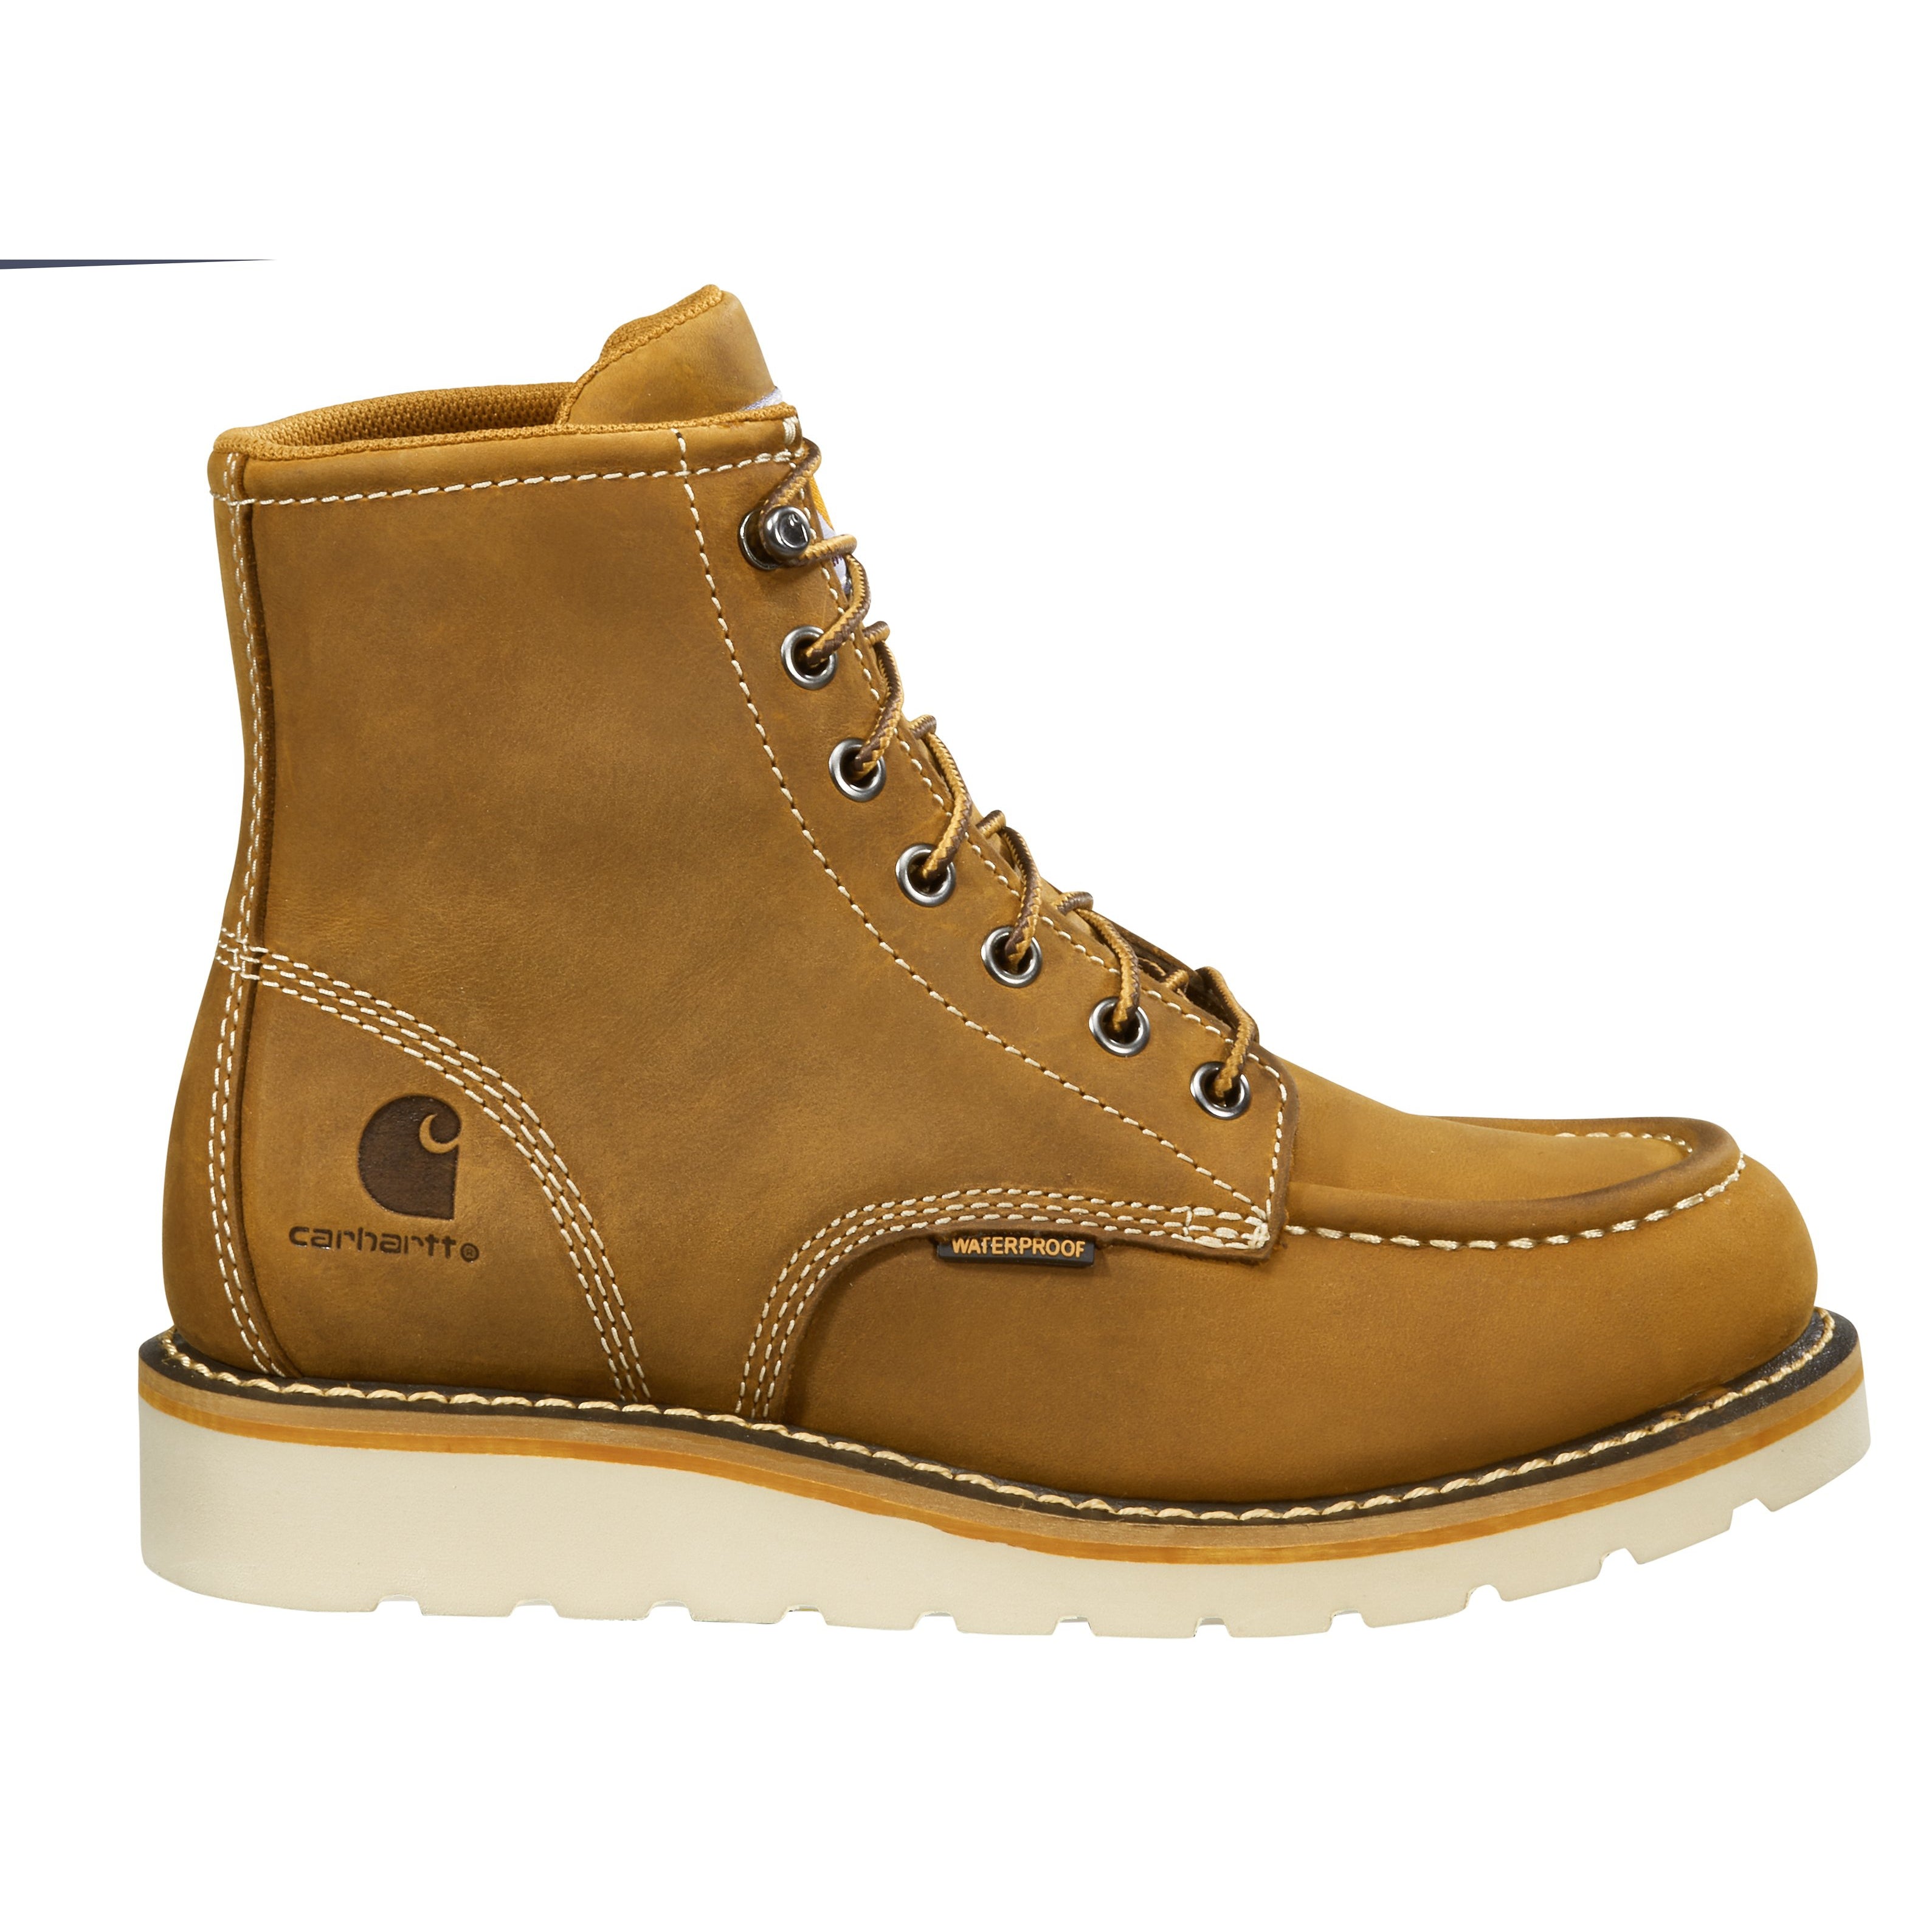 Carhartt Women's 6" Steel Toe WP Wedge Work Boot - Brown - FW6225-W  - Overlook Boots